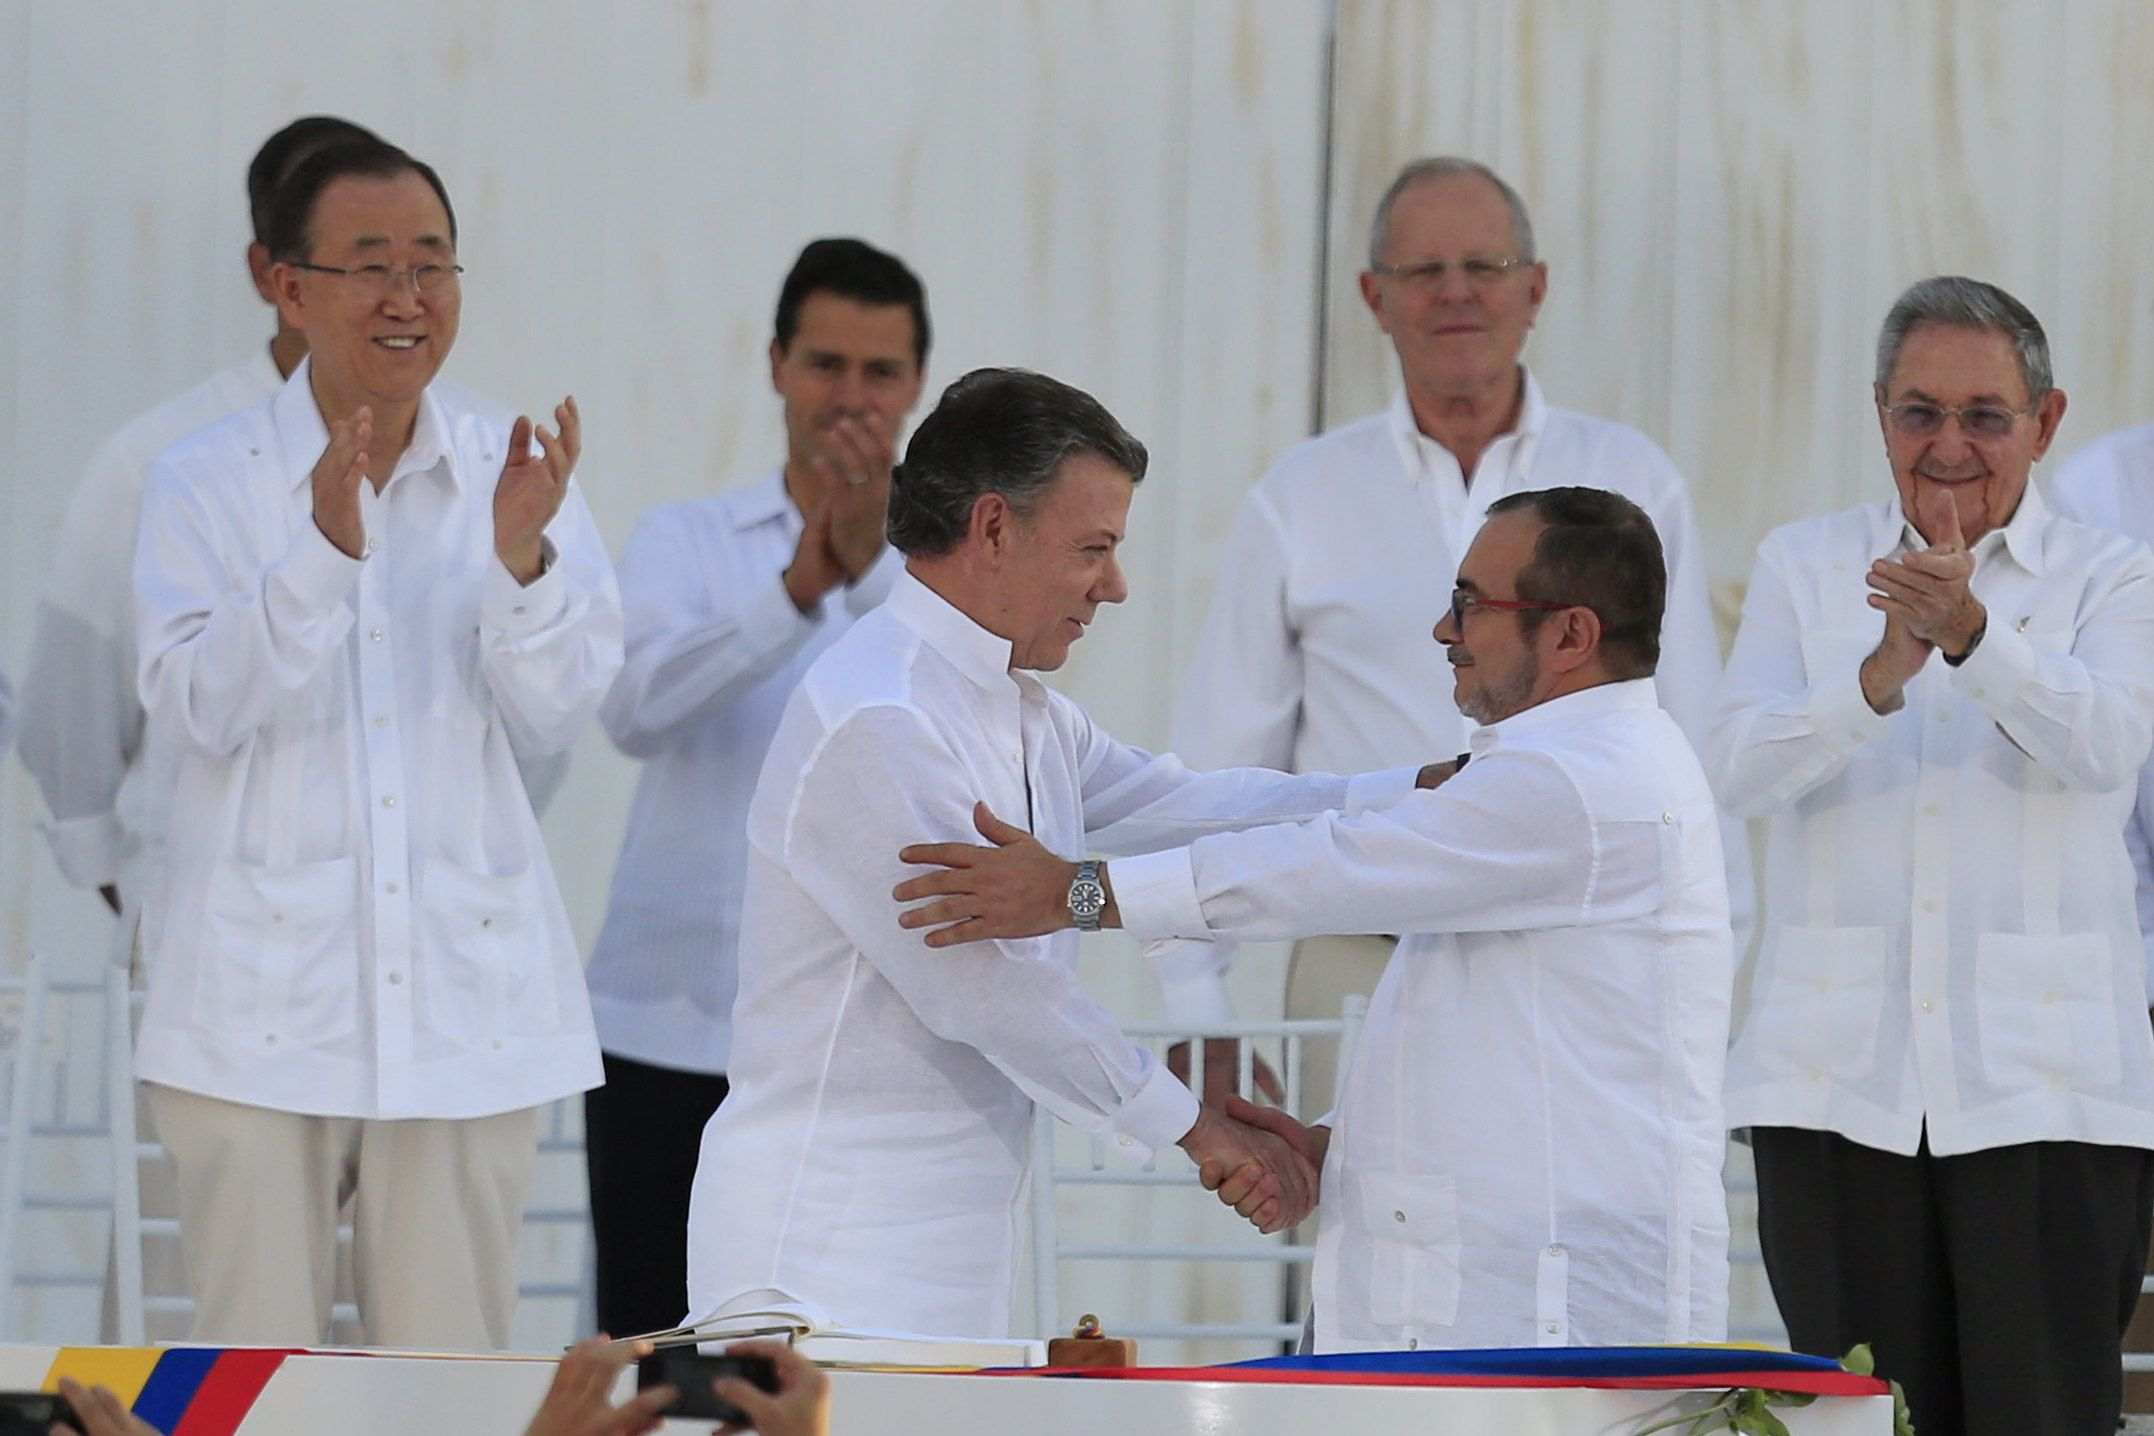 Les FARC demanen perdó a Colòmbia